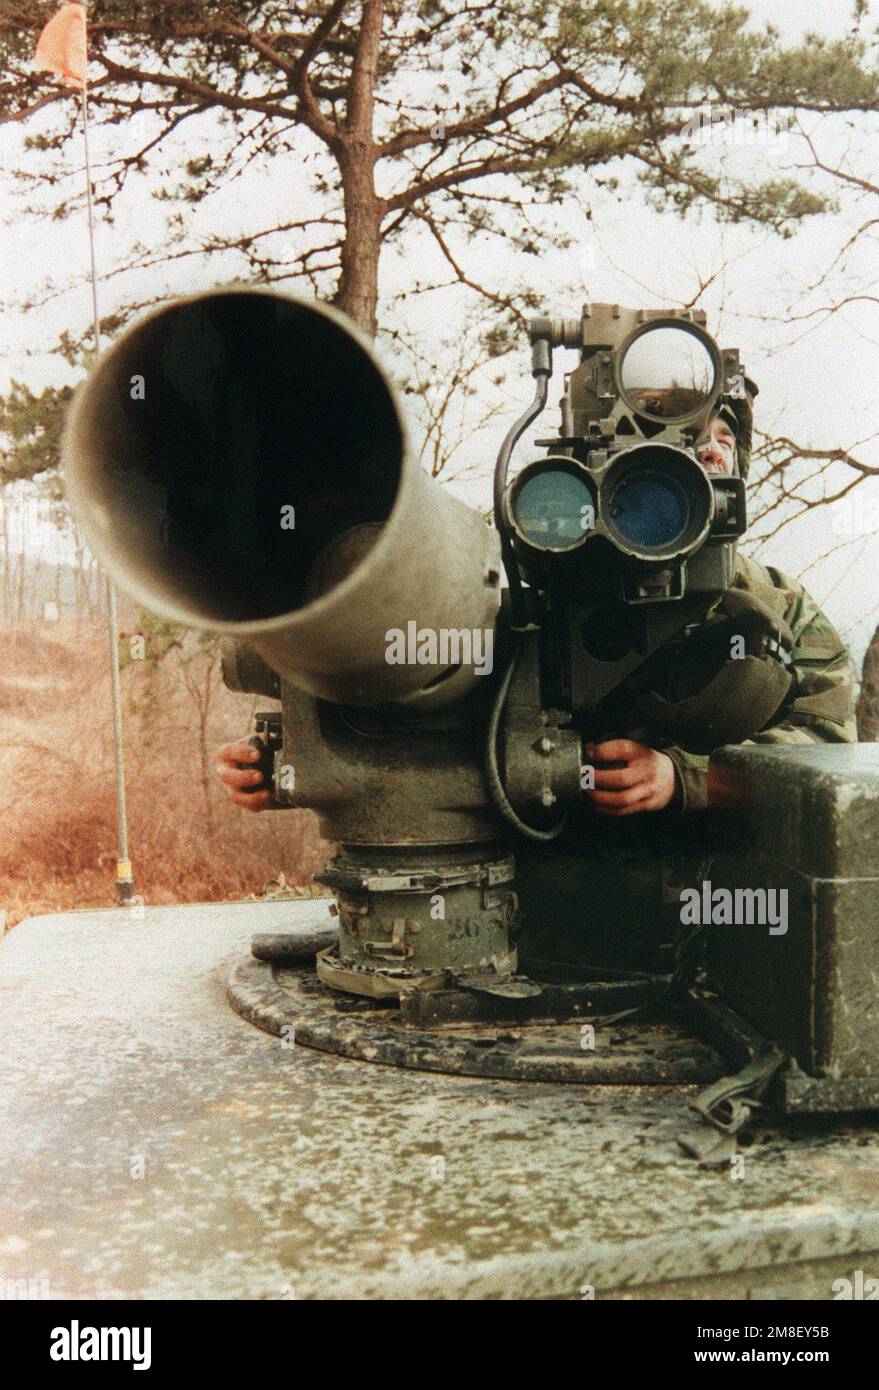 Vorderansicht eines Soldaten aus der 2. Infanterie-Division, Team Orange, während er ein von der Tube gestartetes, optisch GEFÜHRTES, DRAHTGEFÜHRTES Raketensystem (DRAW) anvisiert. Operation/Serie: TEAMGEIST '91 Basis: Inchon Land: Südkorea Stockfoto